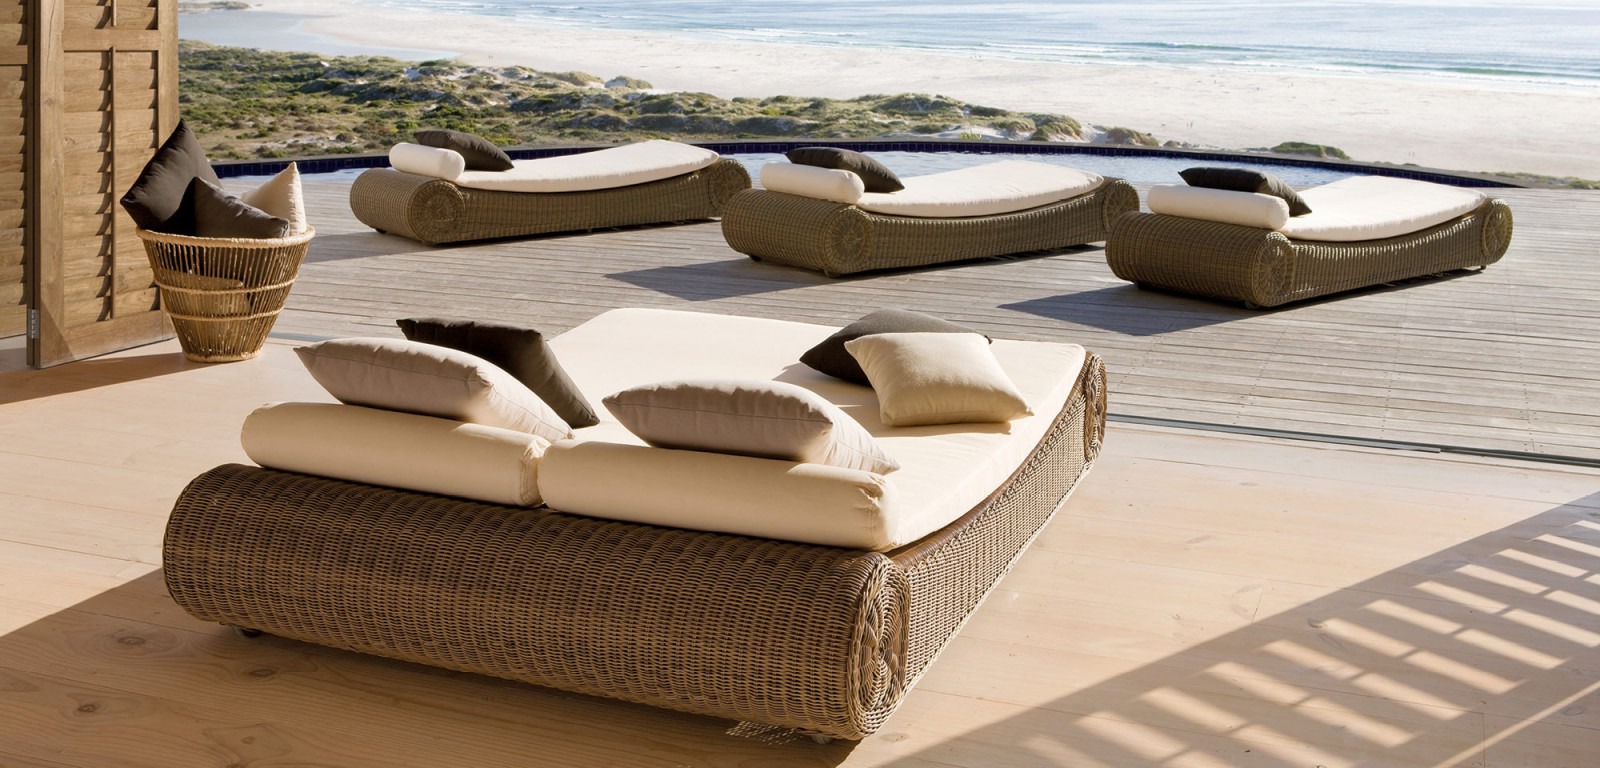 Ces larges chaises confortables, ces sofas et bains de soleil invitent à se perdre dans ses rêves..